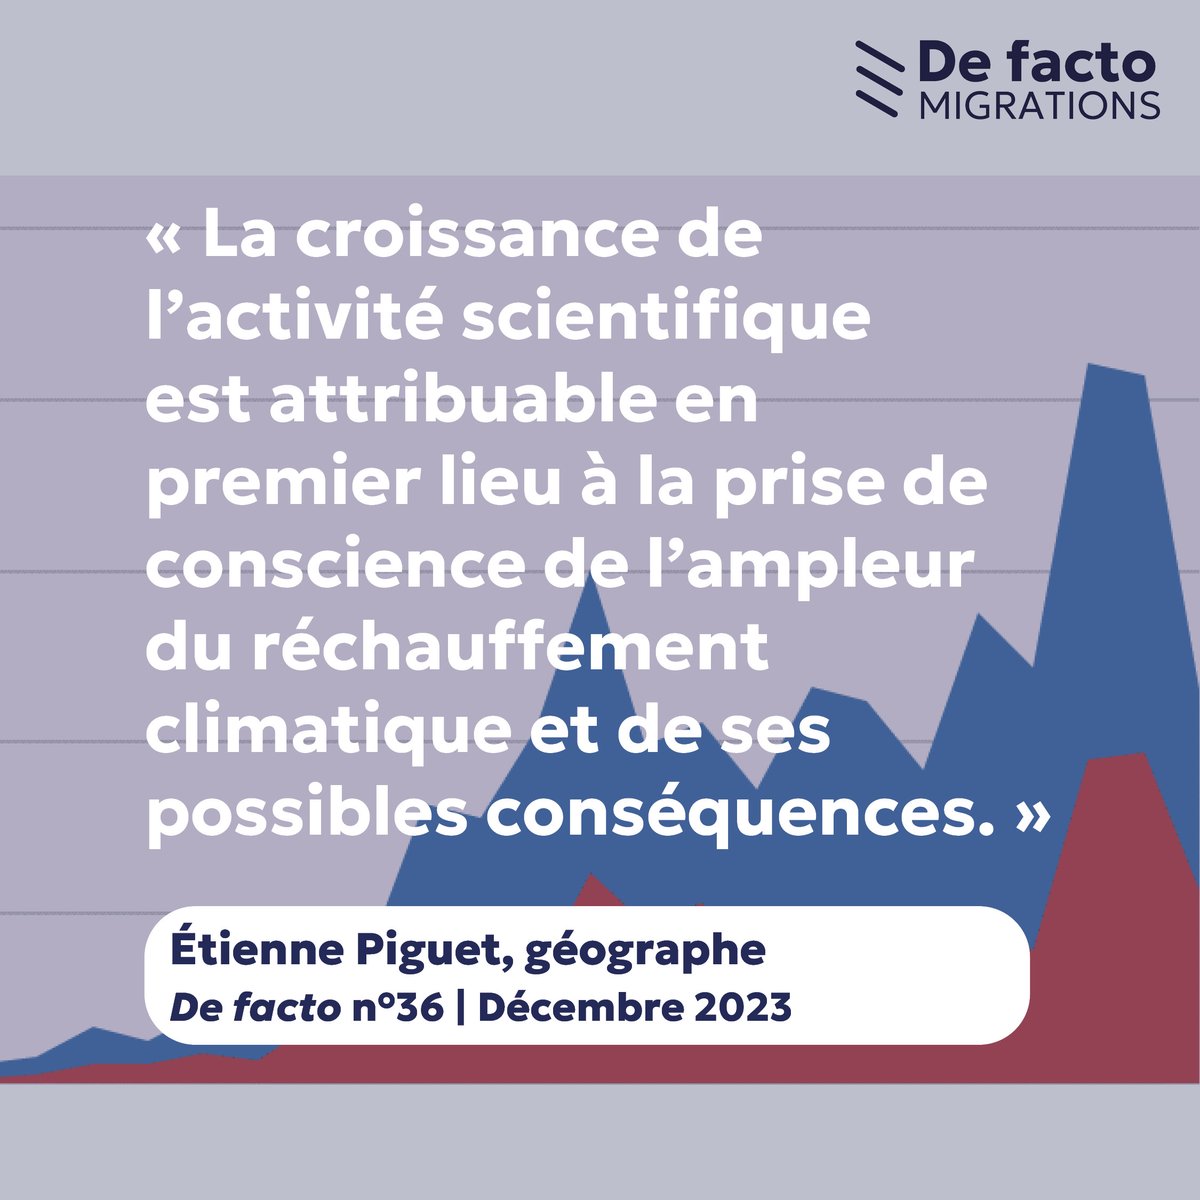 [De facto / En chiffres ] « Mobilité – Environnement – Climat : une recherche en plein essor », Étienne Piguet géographe (@UniNeuchatel). De facto n°36, décembre 2023. Lire l'article : icmigrations.cnrs.fr/2023/12/07/def…